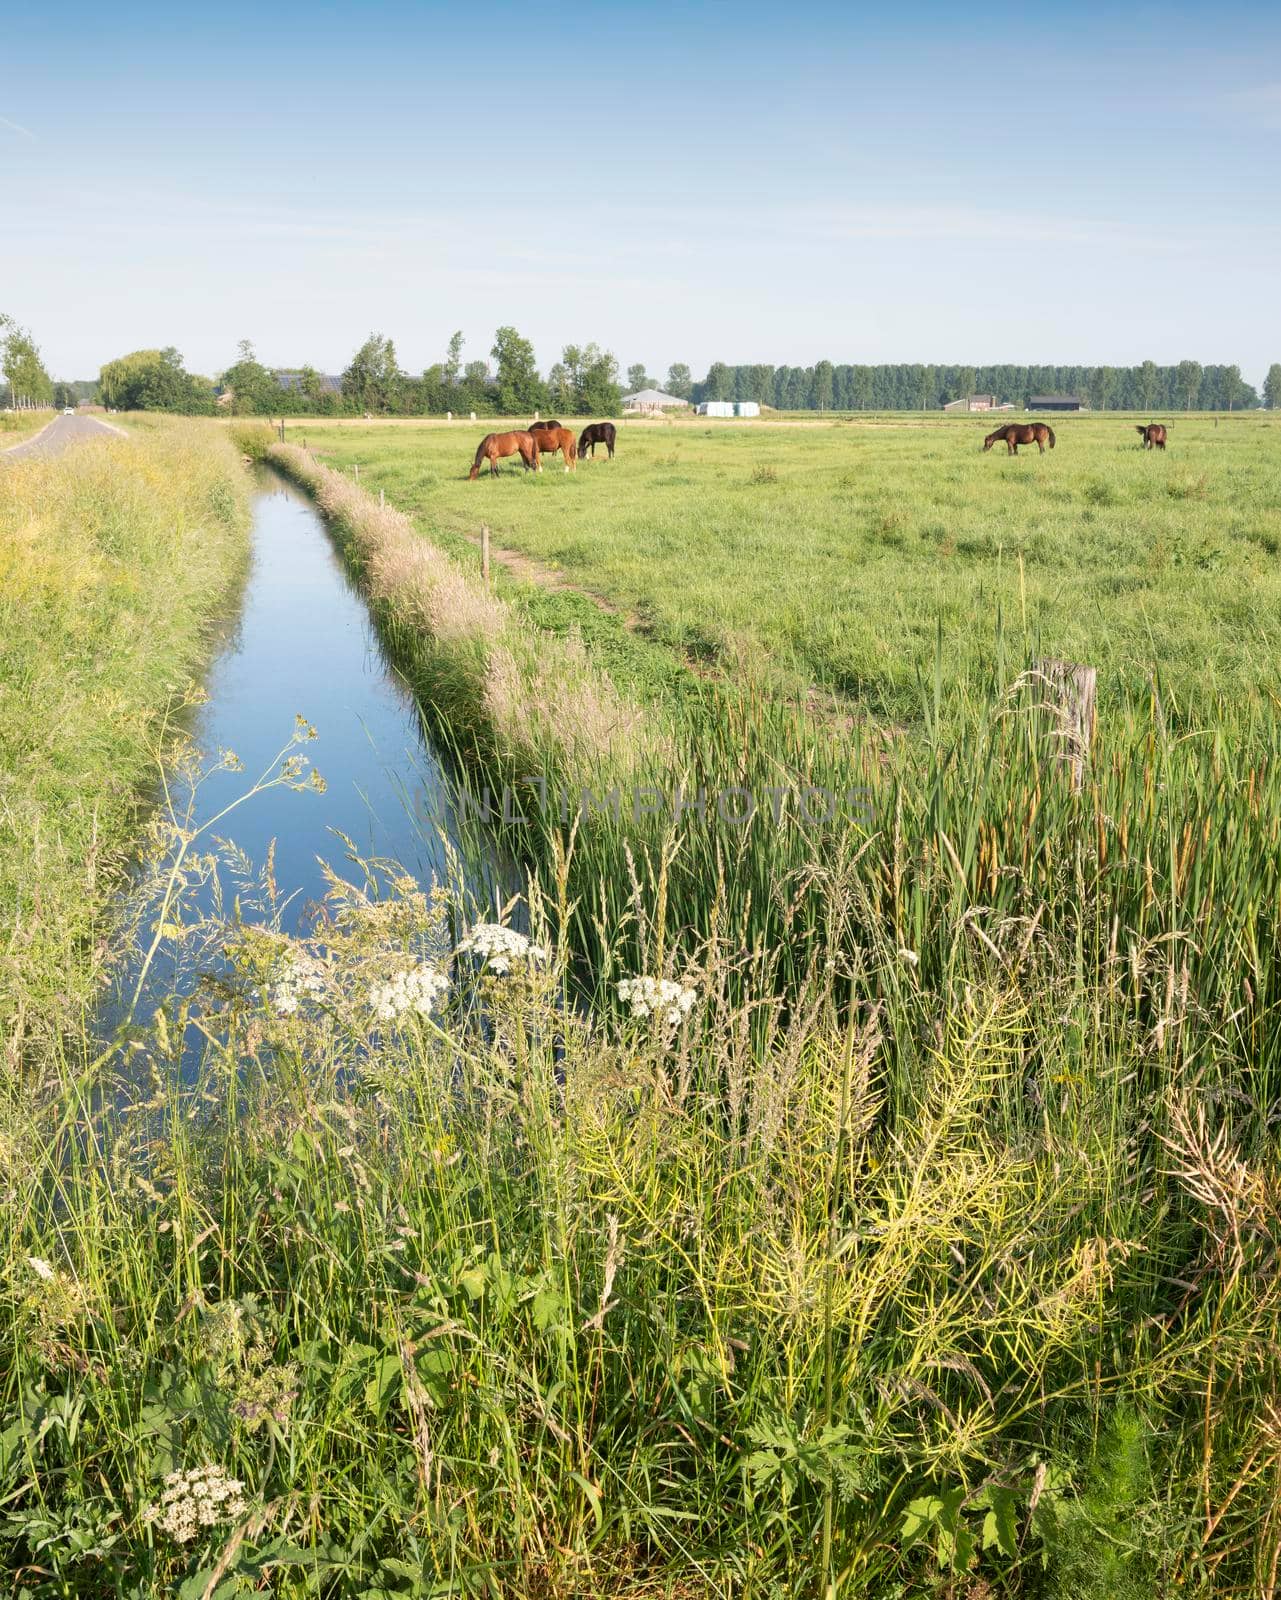 horses in green meadow near nijmegen in the netherlands under blue sky in summer by ahavelaar